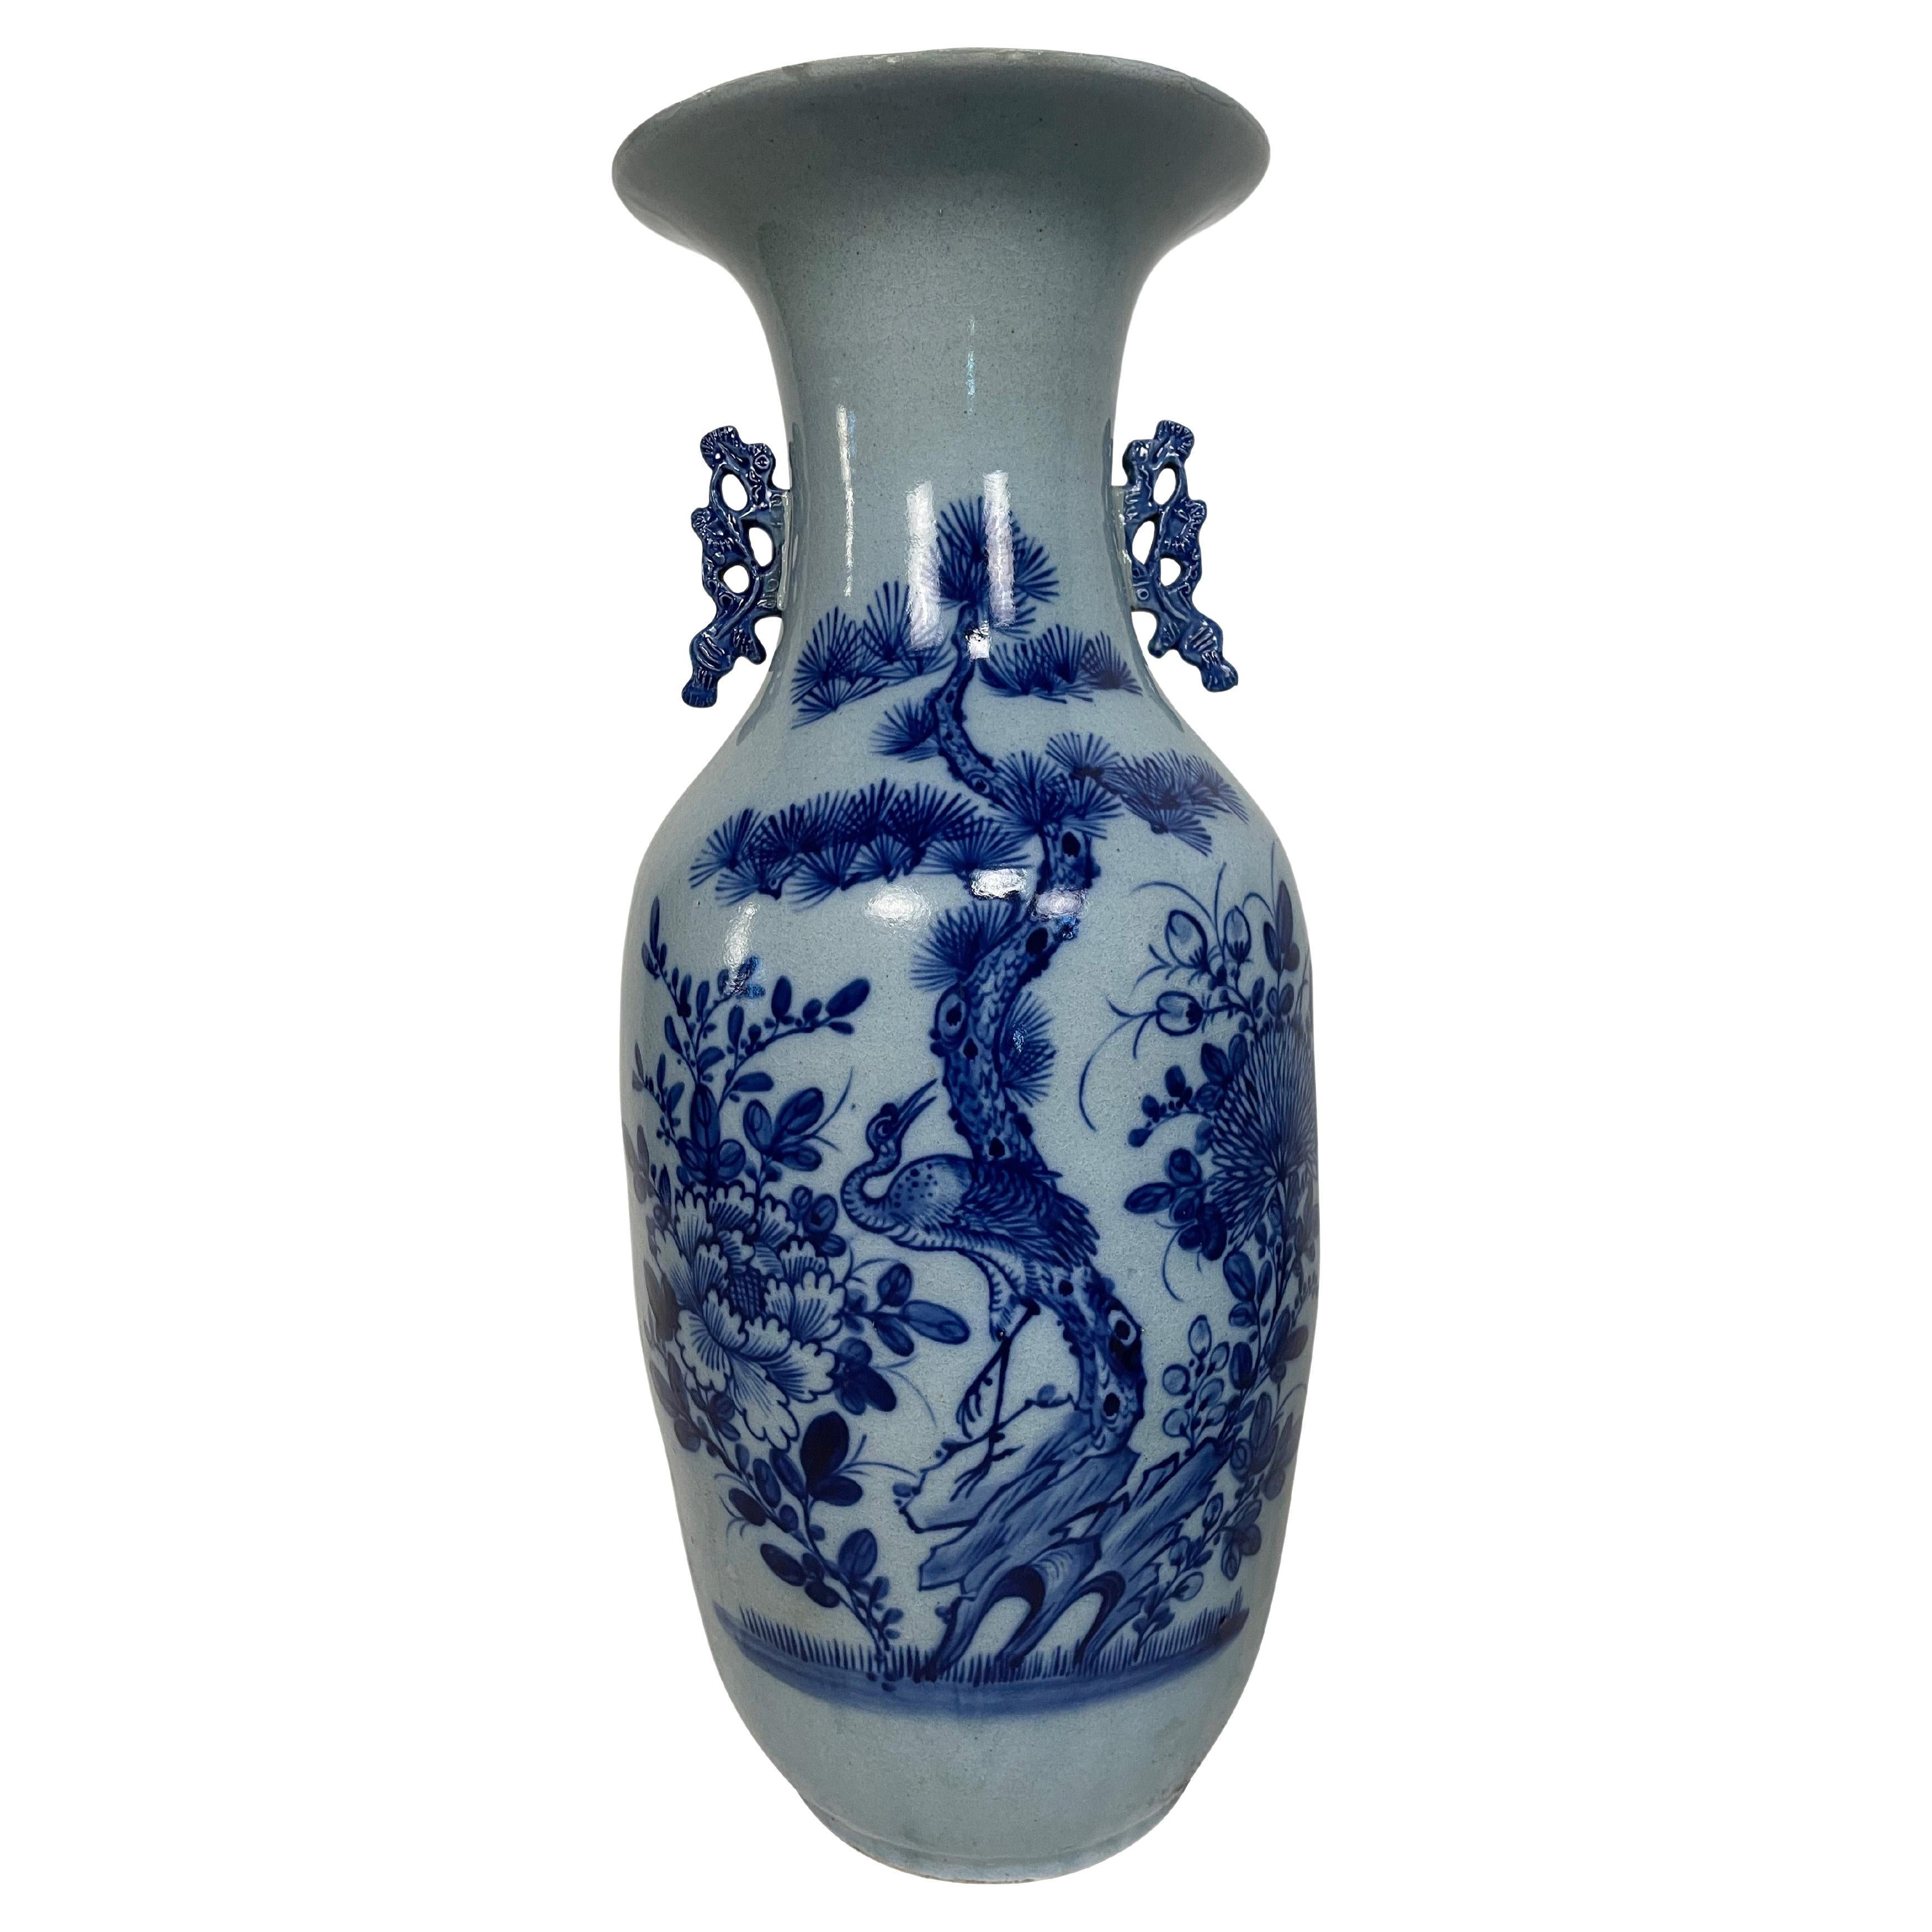 Vase balustre en porcelaine chinoise du XIXe siècle, décoré de fleurs et d'objets divers en bas-relief et en bleu de cobalt sous glaçure sur fond blanc. Le vase a des poignées stylisées moulées en bleu cobalt de chaque côté du large col en entonnoir